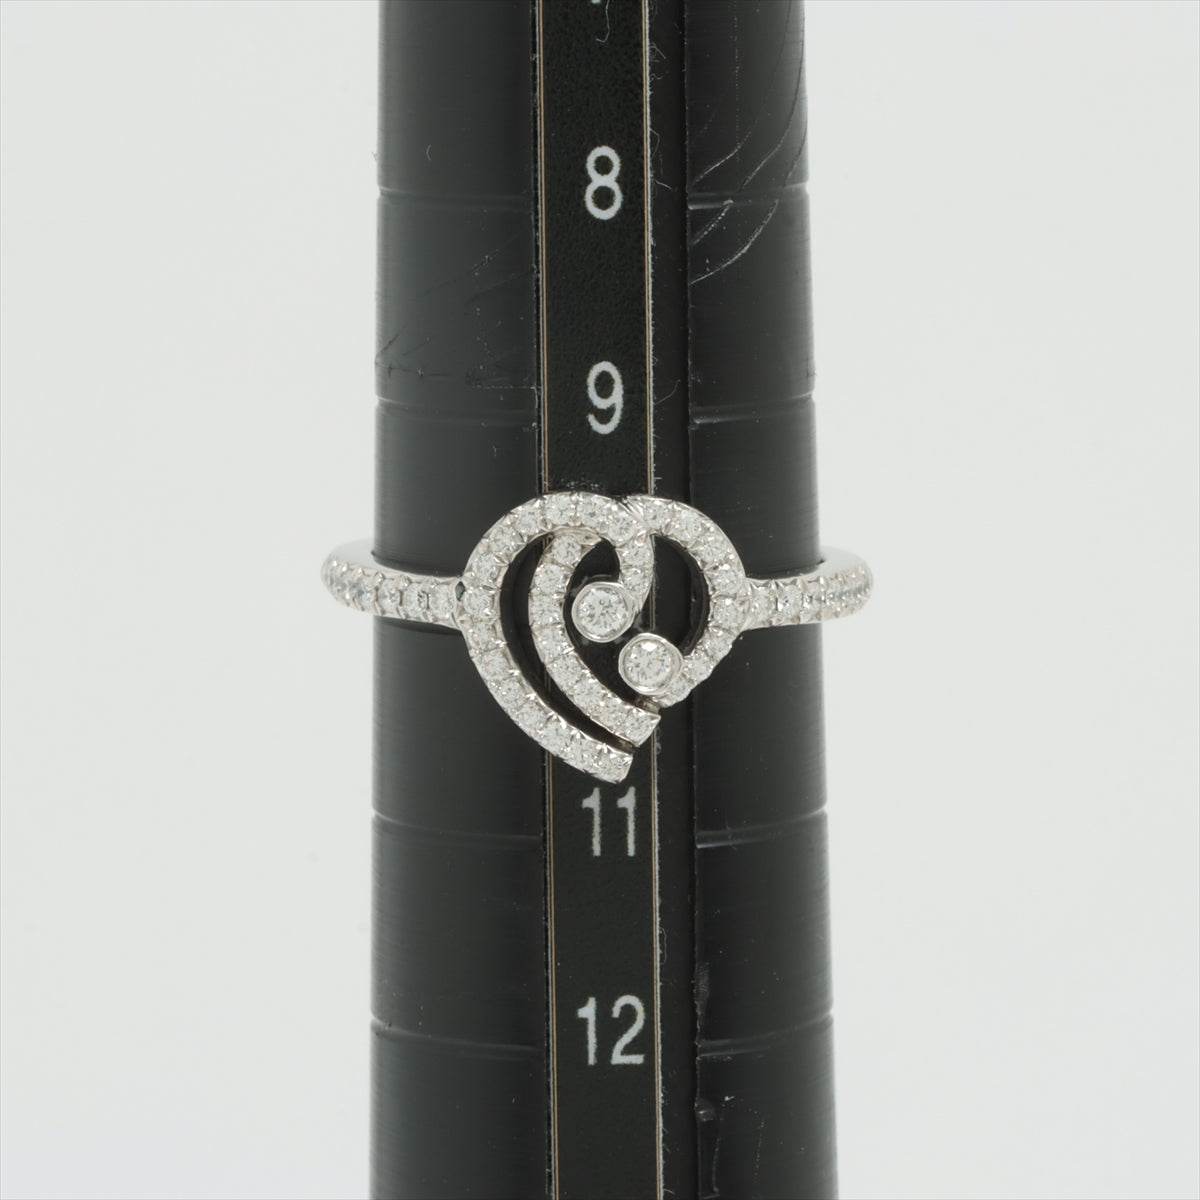 Tiffany Enchant Heart diamond rings Pt950 3.6g